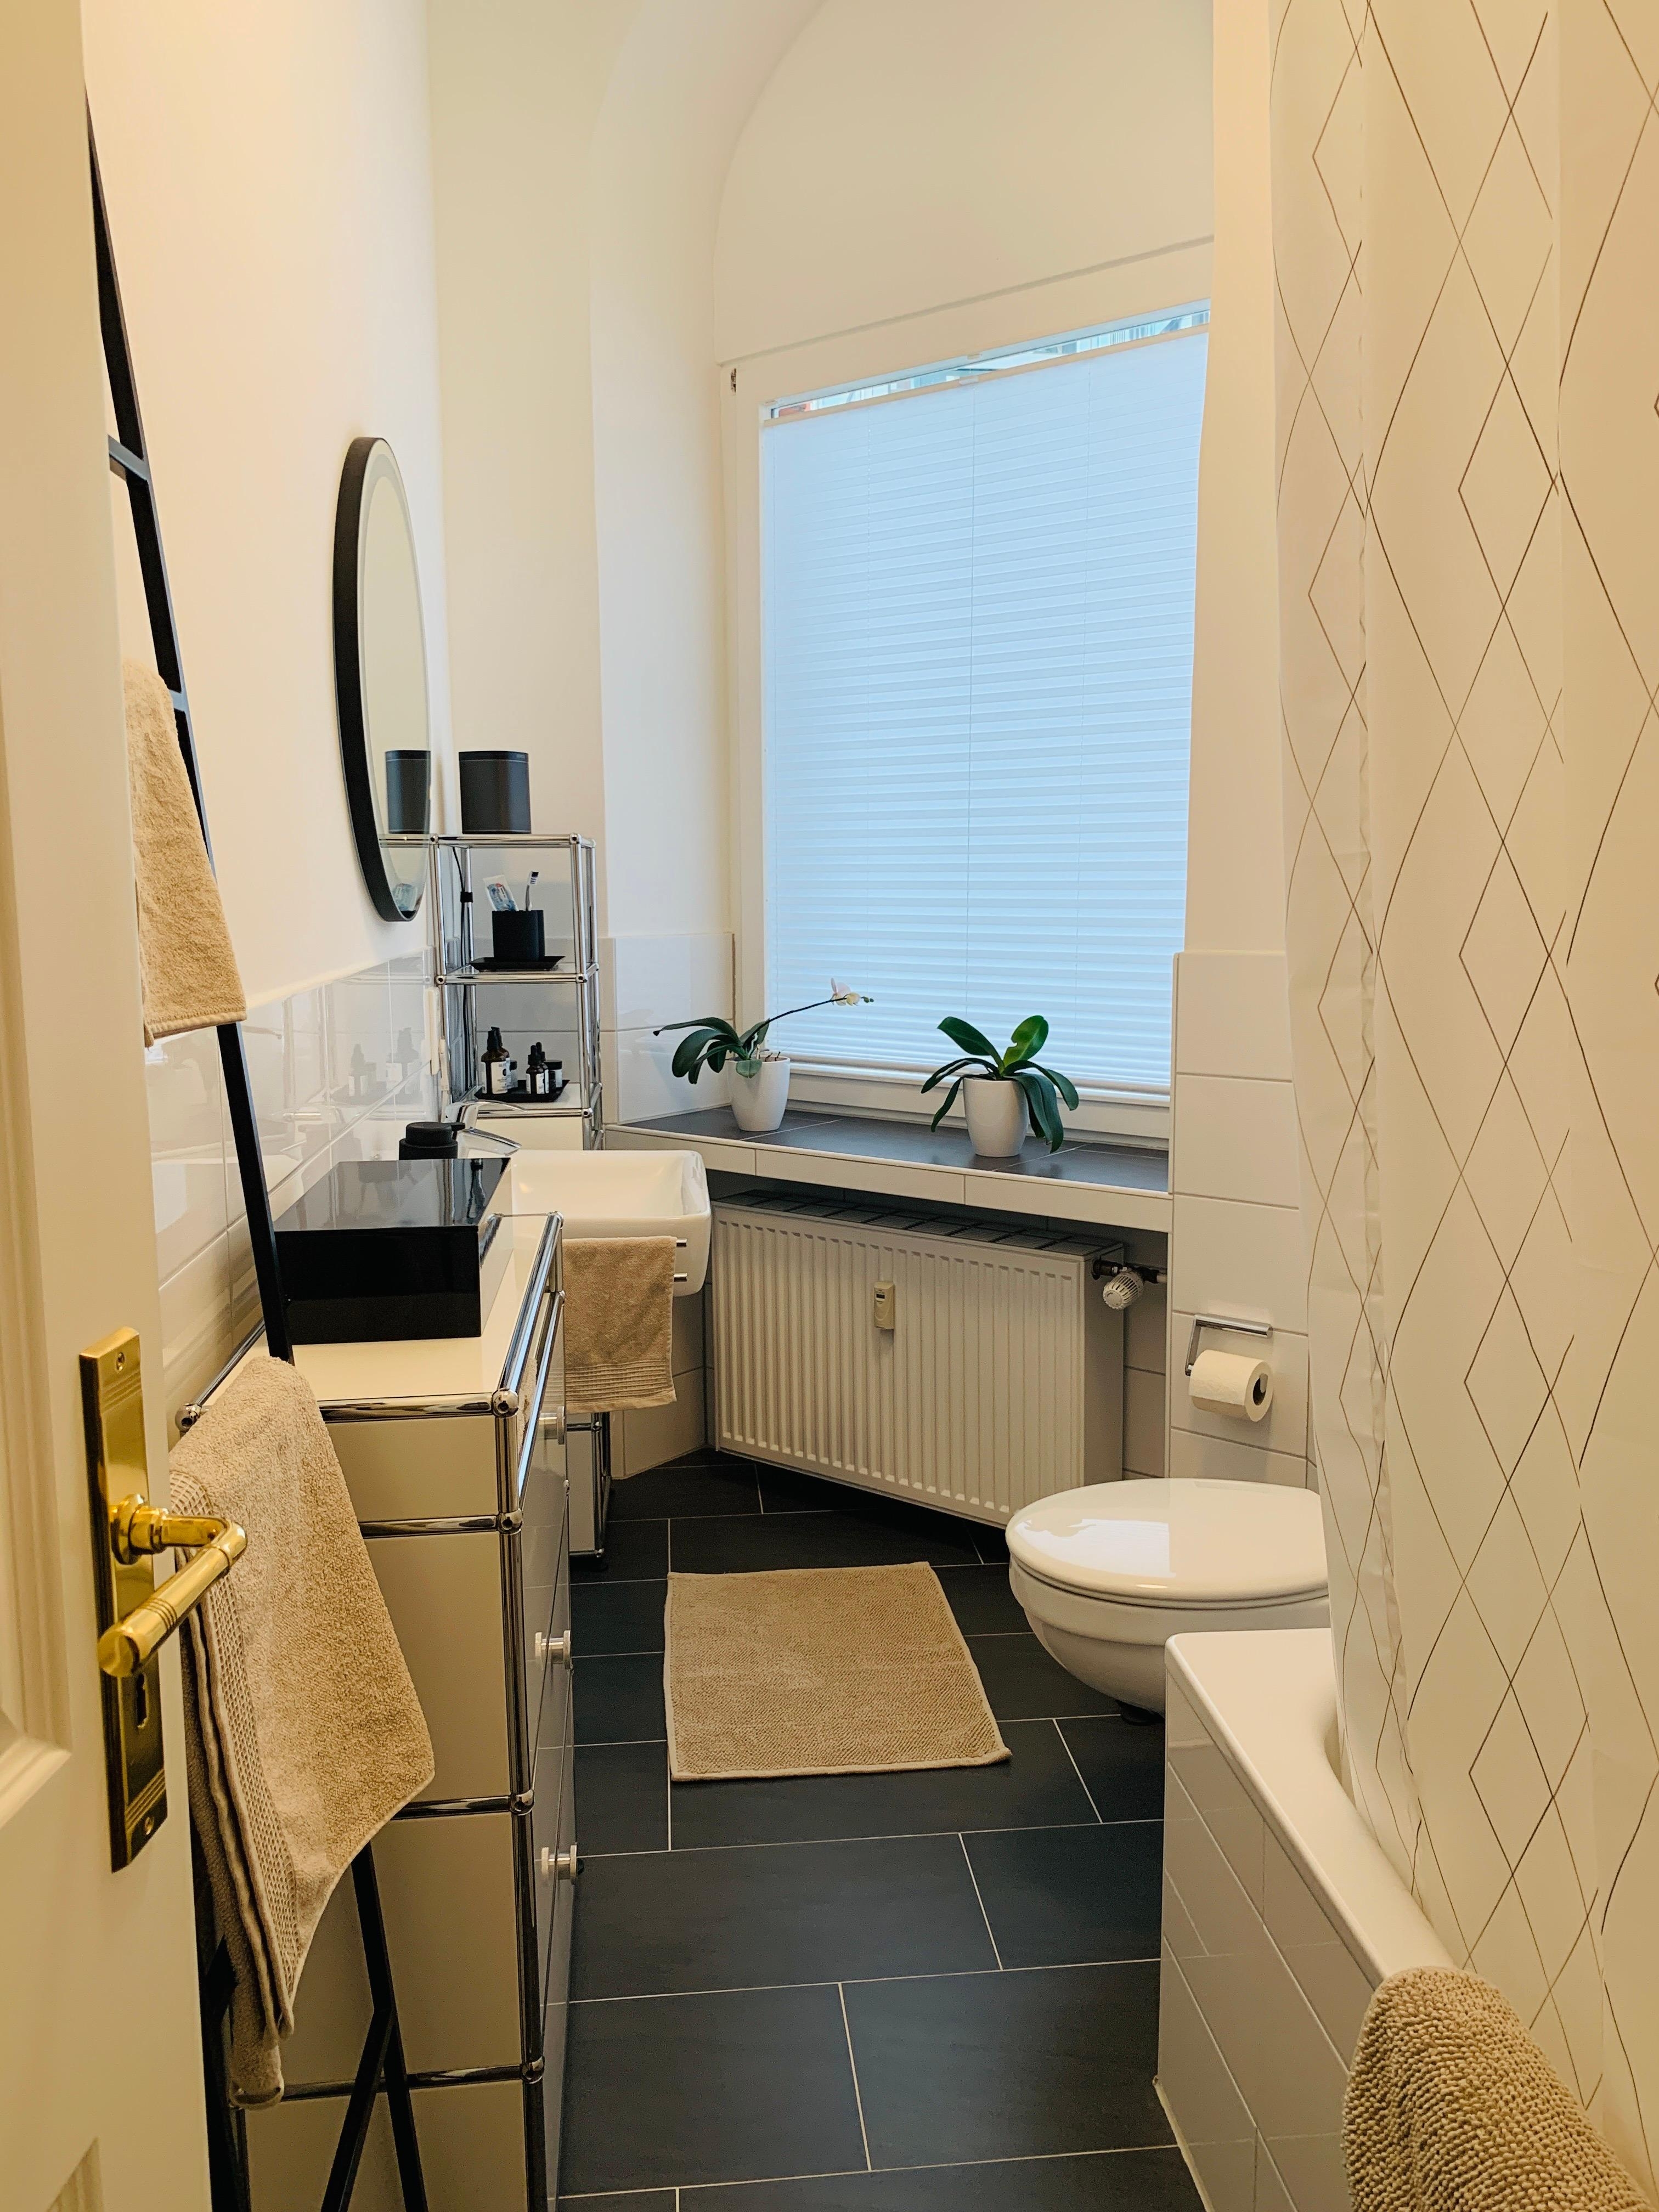 Blick ins Altbau-Badezimmer... klein aber fein 😊 #livingchallenge #badezimmer #neuhier #altbauliebe #usmhaller